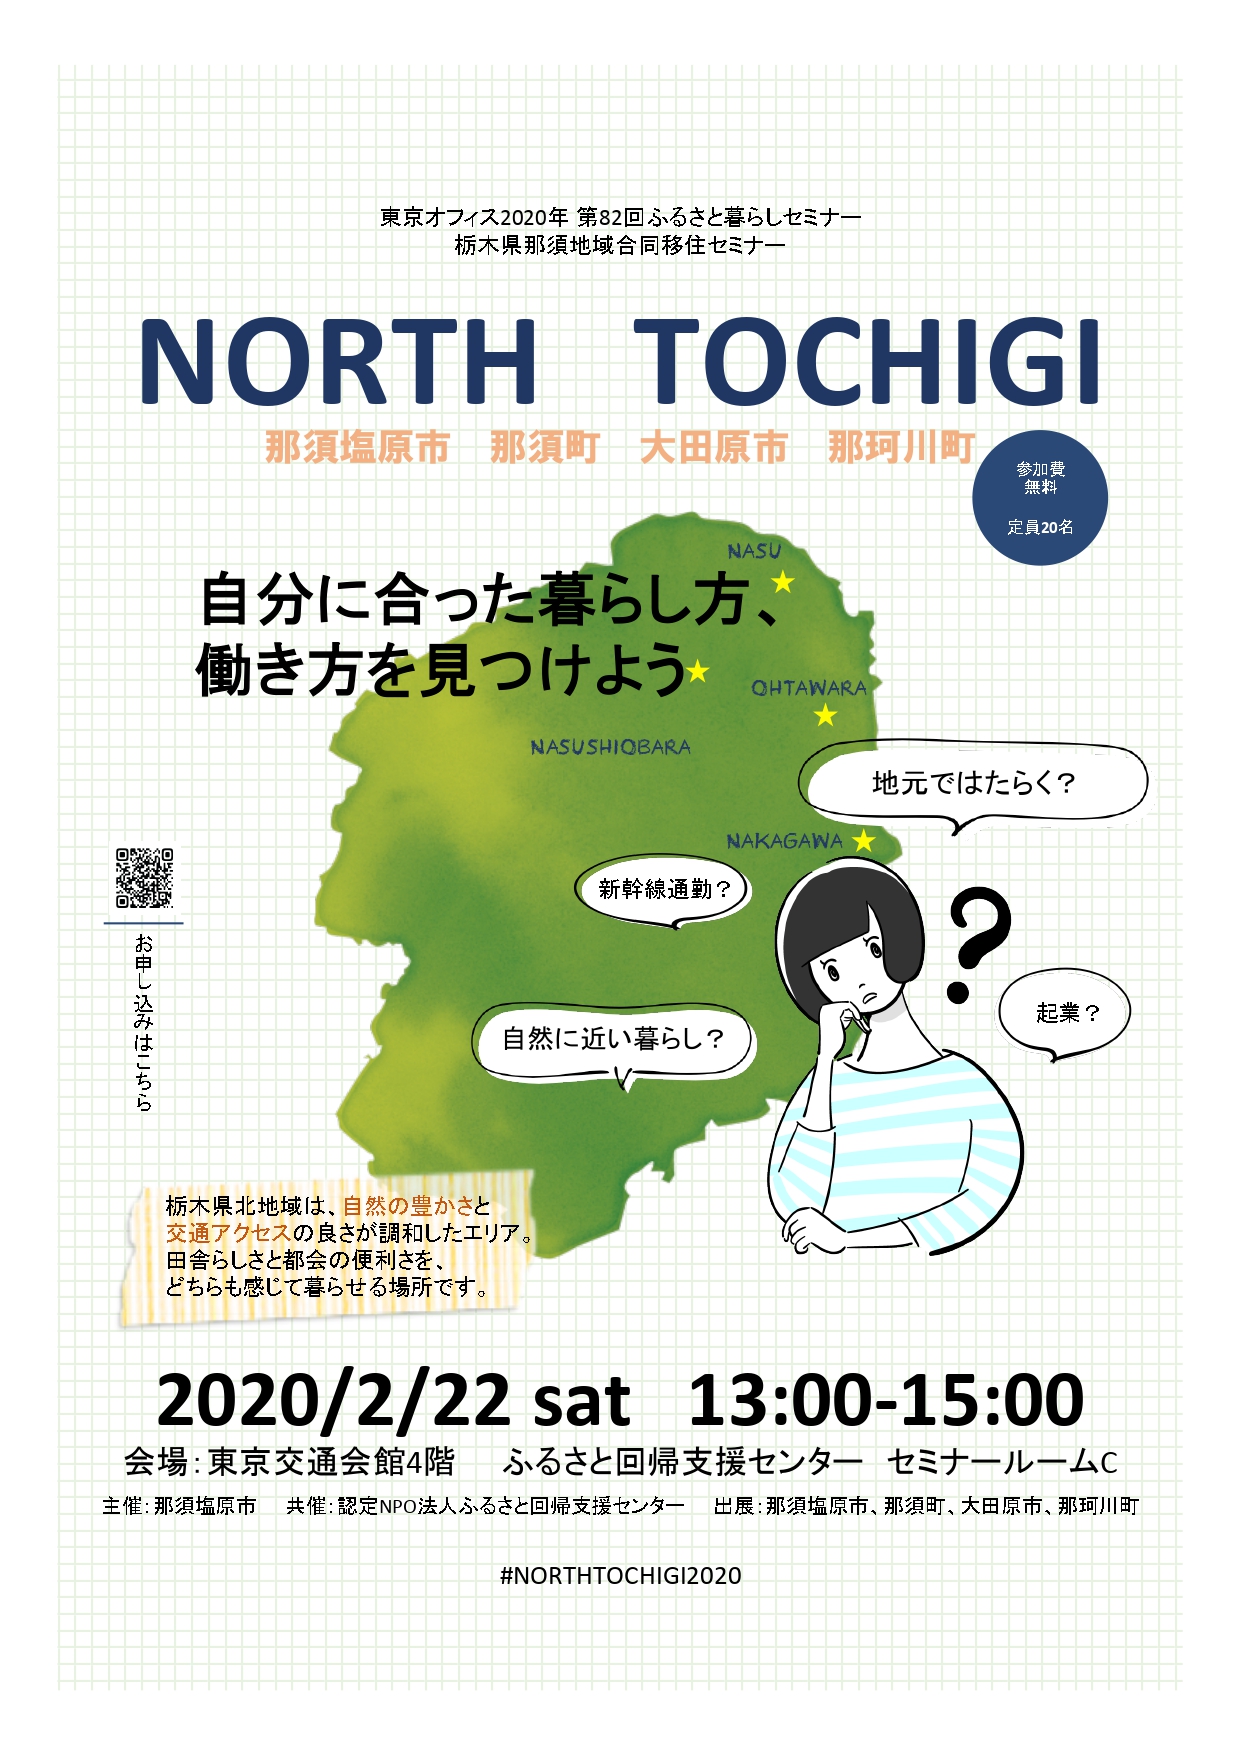 那須地域合同移住セミナー NORTH TOCHIGI ～自分に合った暮らし方、働き方を見つけよう～ | 移住関連イベント情報